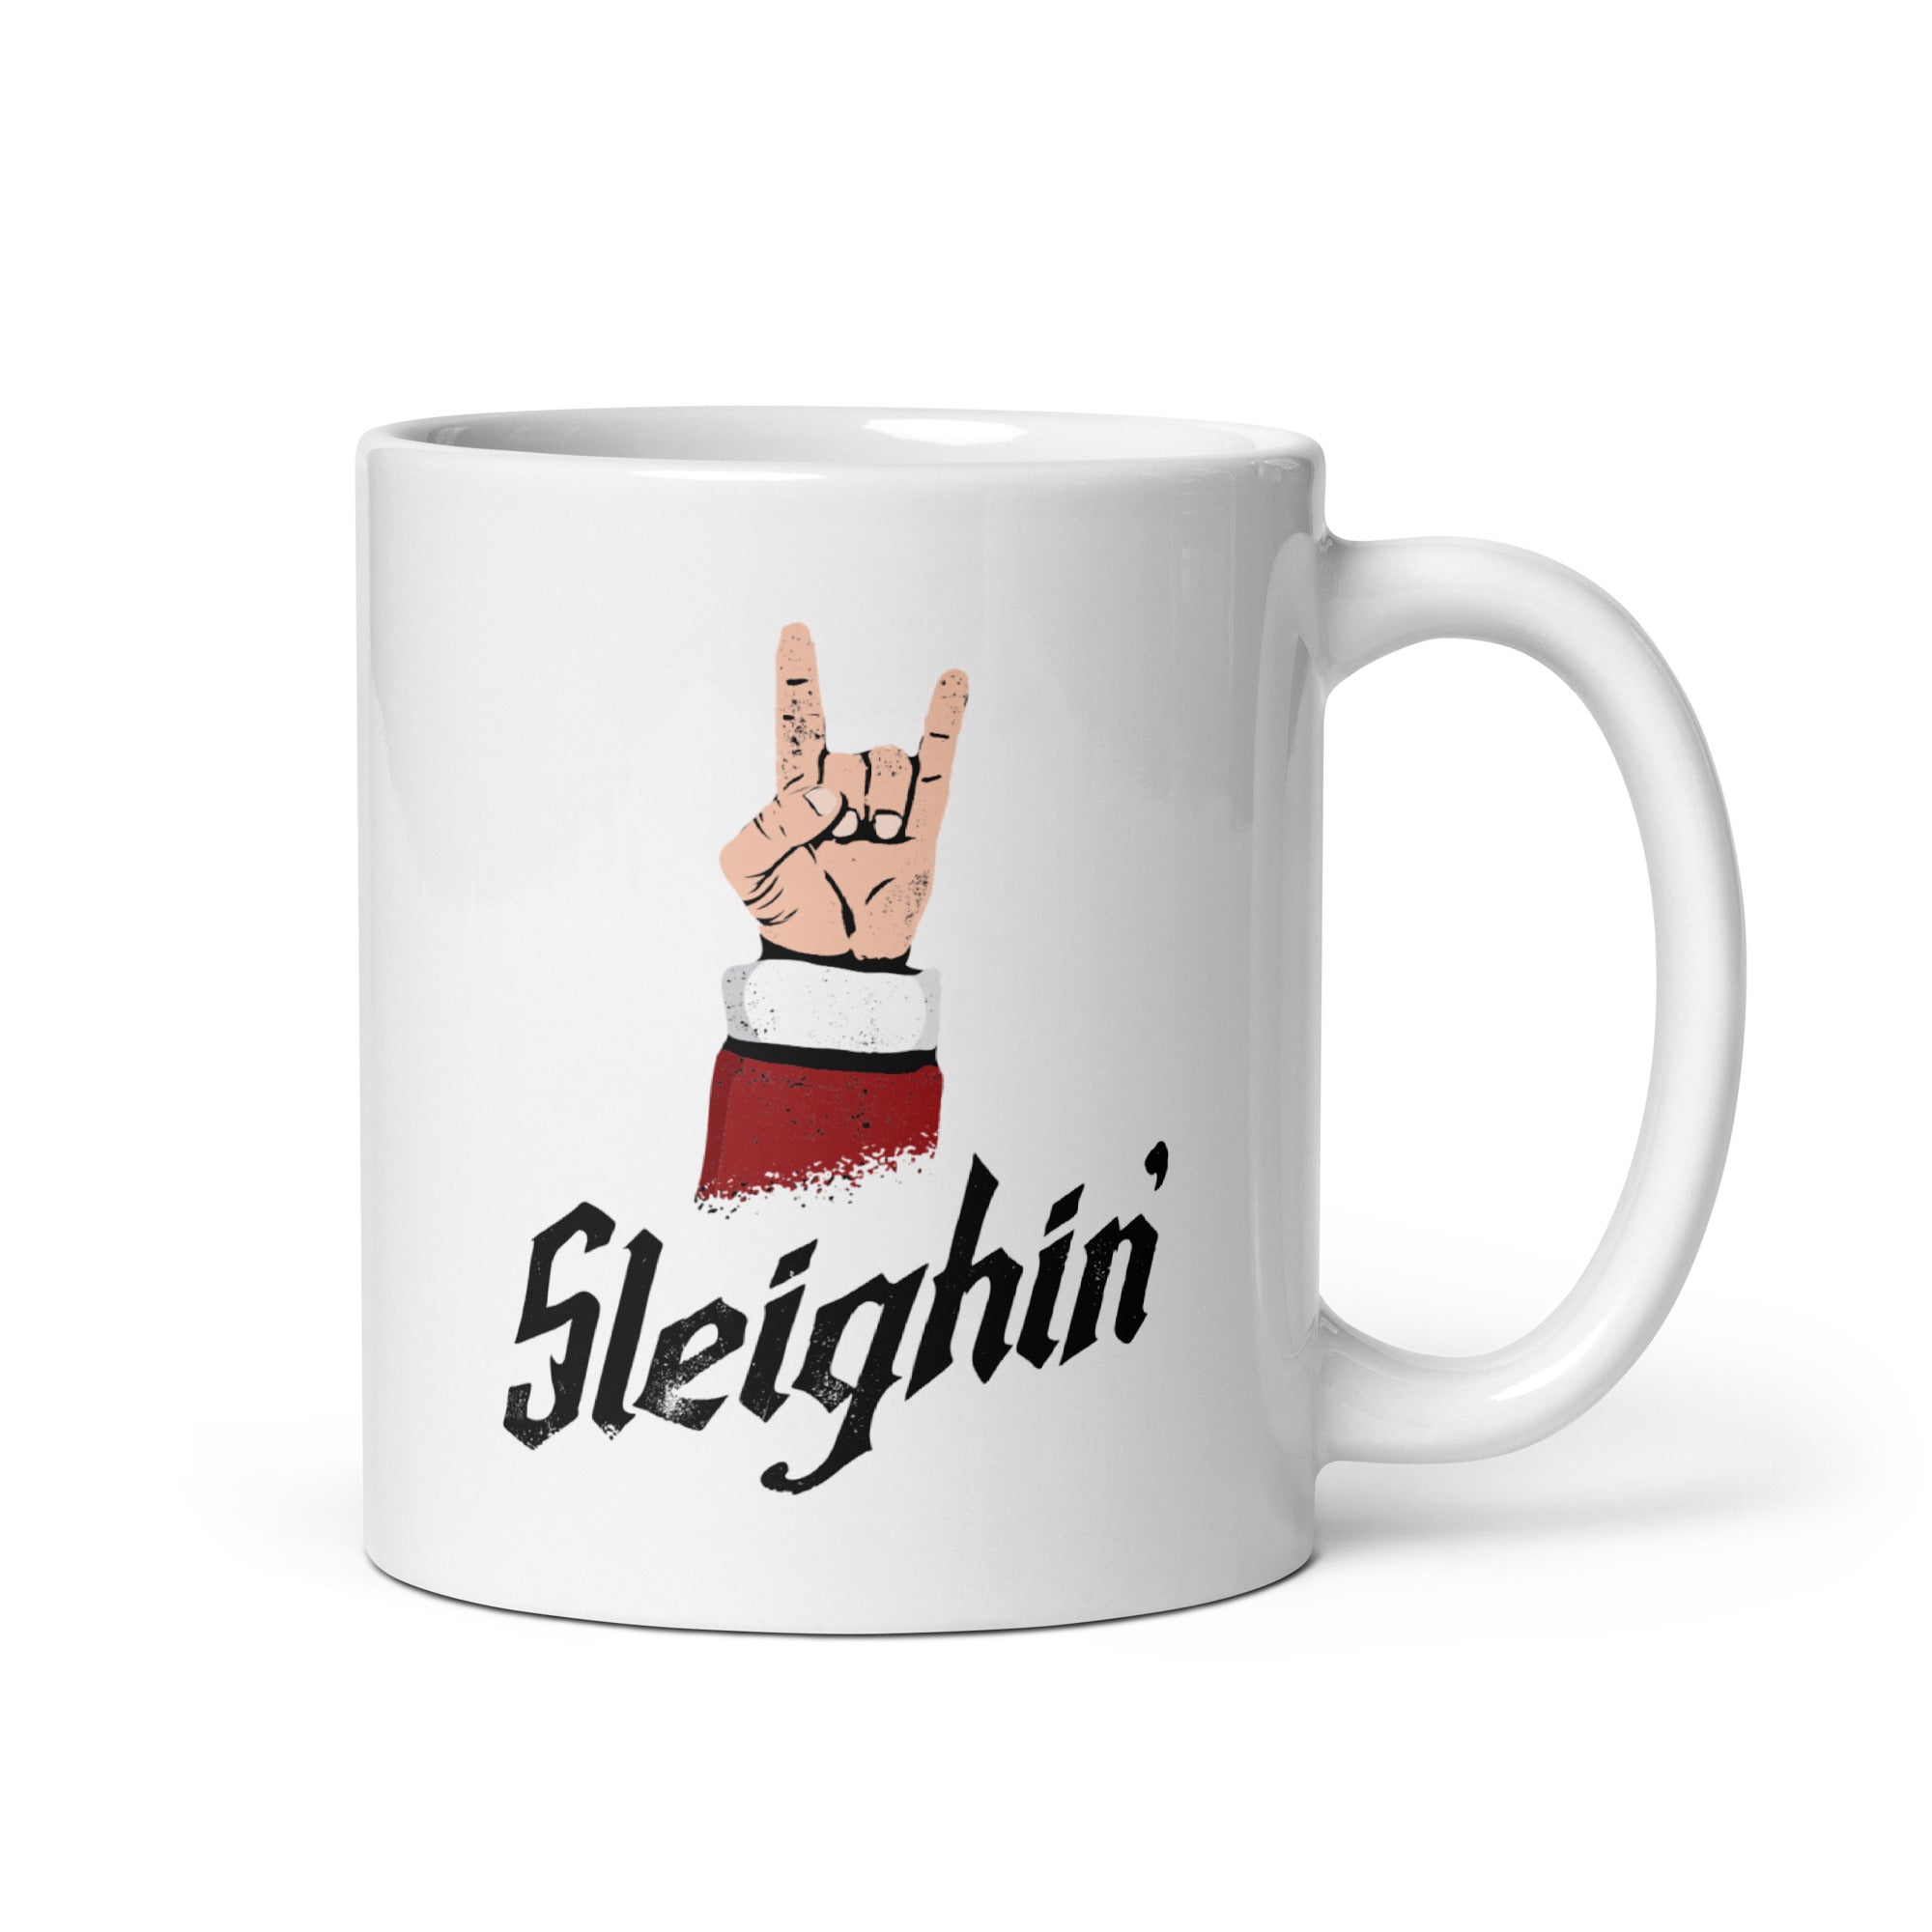 Sleighin' - 11oz Coffee Mug